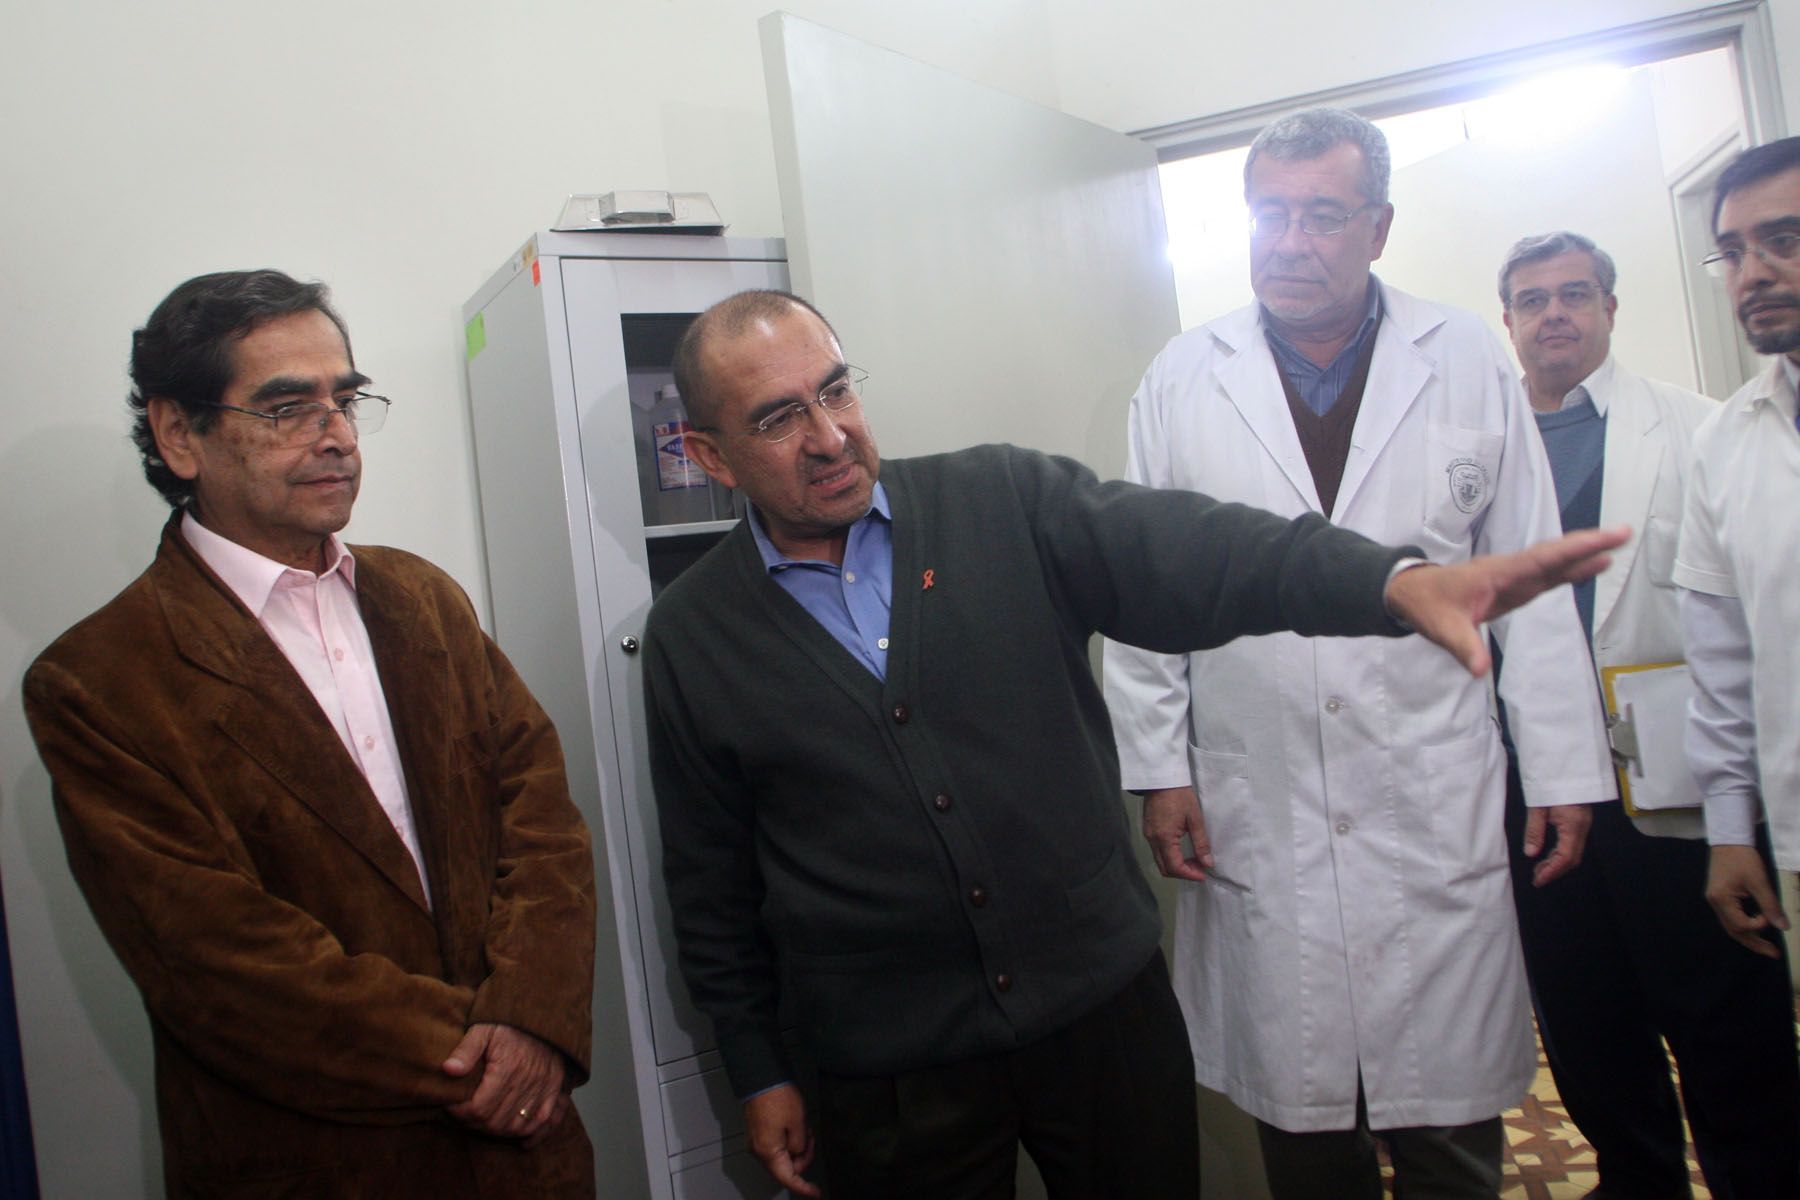 El doctor Elmer Huerta (al centro) acompaña al ministro de Salud Oscar Ugarte en el Hospital Alcides Carrión en el Callao. Foto: ANDINA / Carolina Urra.